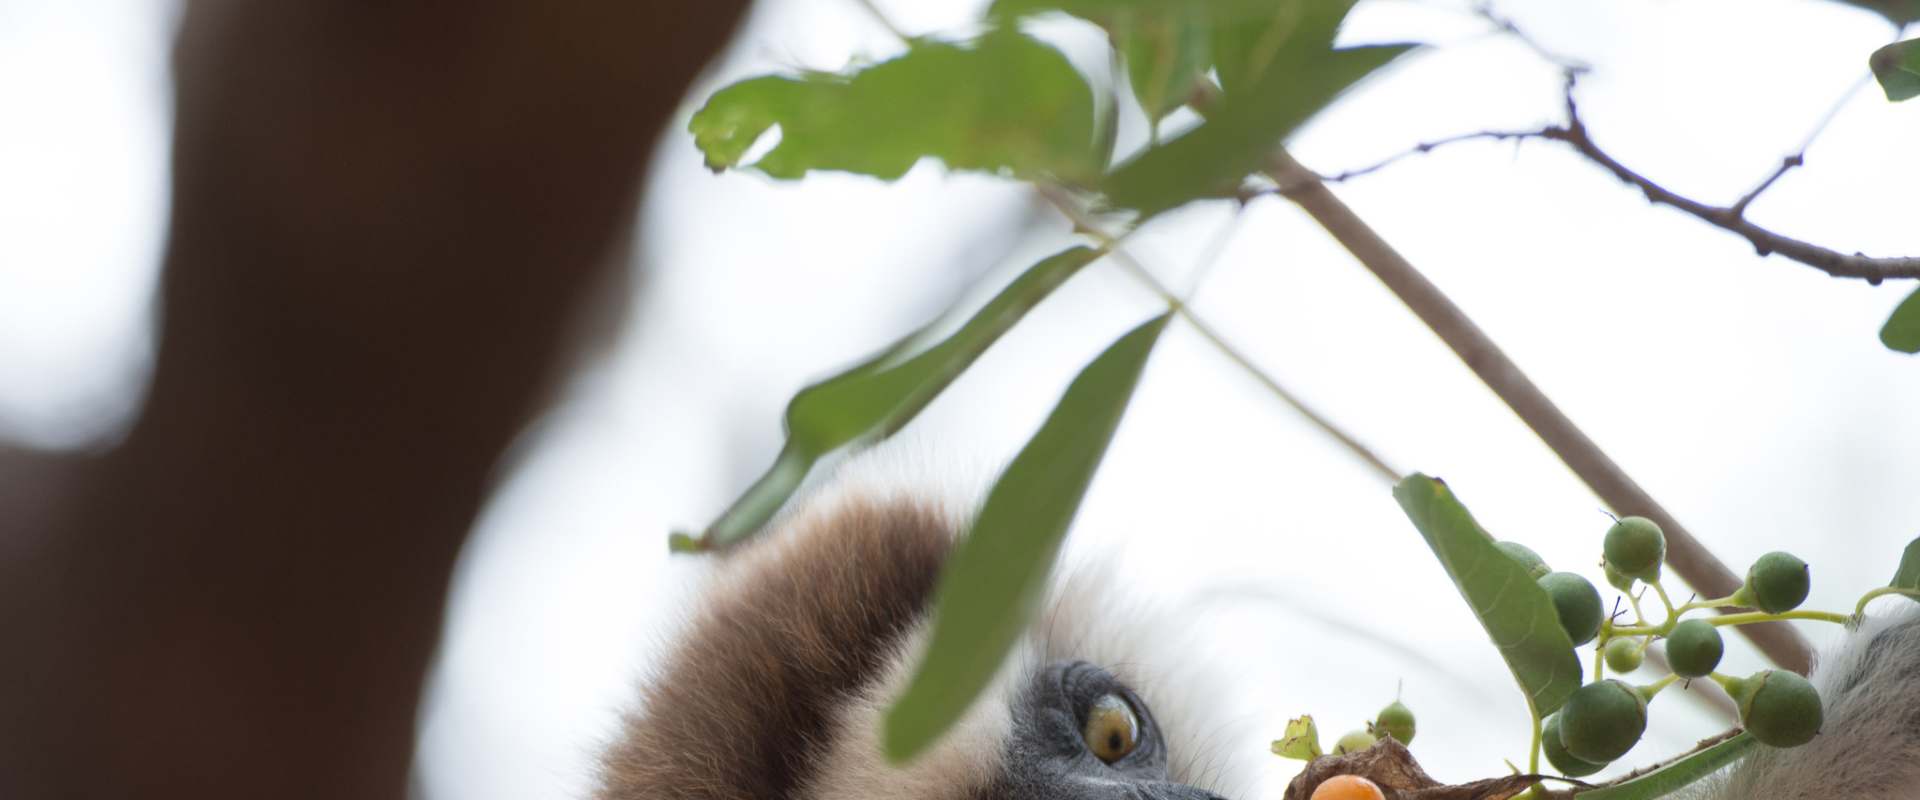 Island of Lemurs: Madagascar background 1